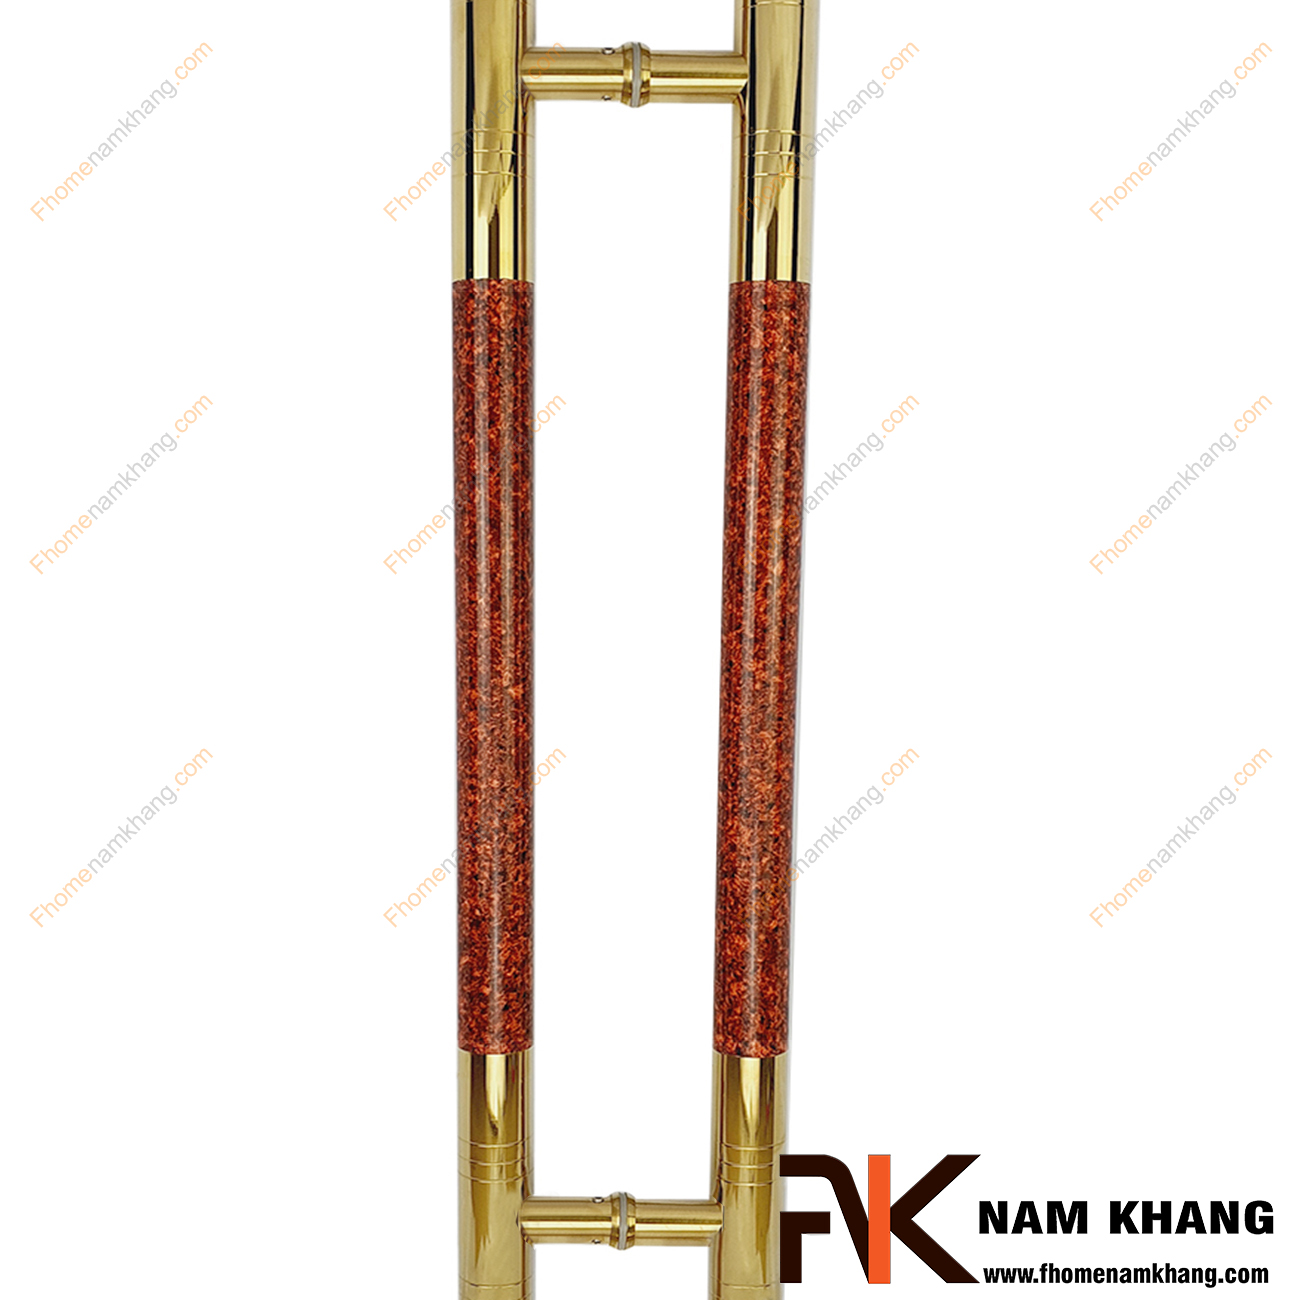 Tay nắm cửa chính màu vàng bóng phối vân đá đỏ NKC014-VD là dạng tay nắm đồng tâm, có kích thước lớn dùng cho nhiều loại cửa với đầy đủ các chất liệu theo thiết kế nội thất.